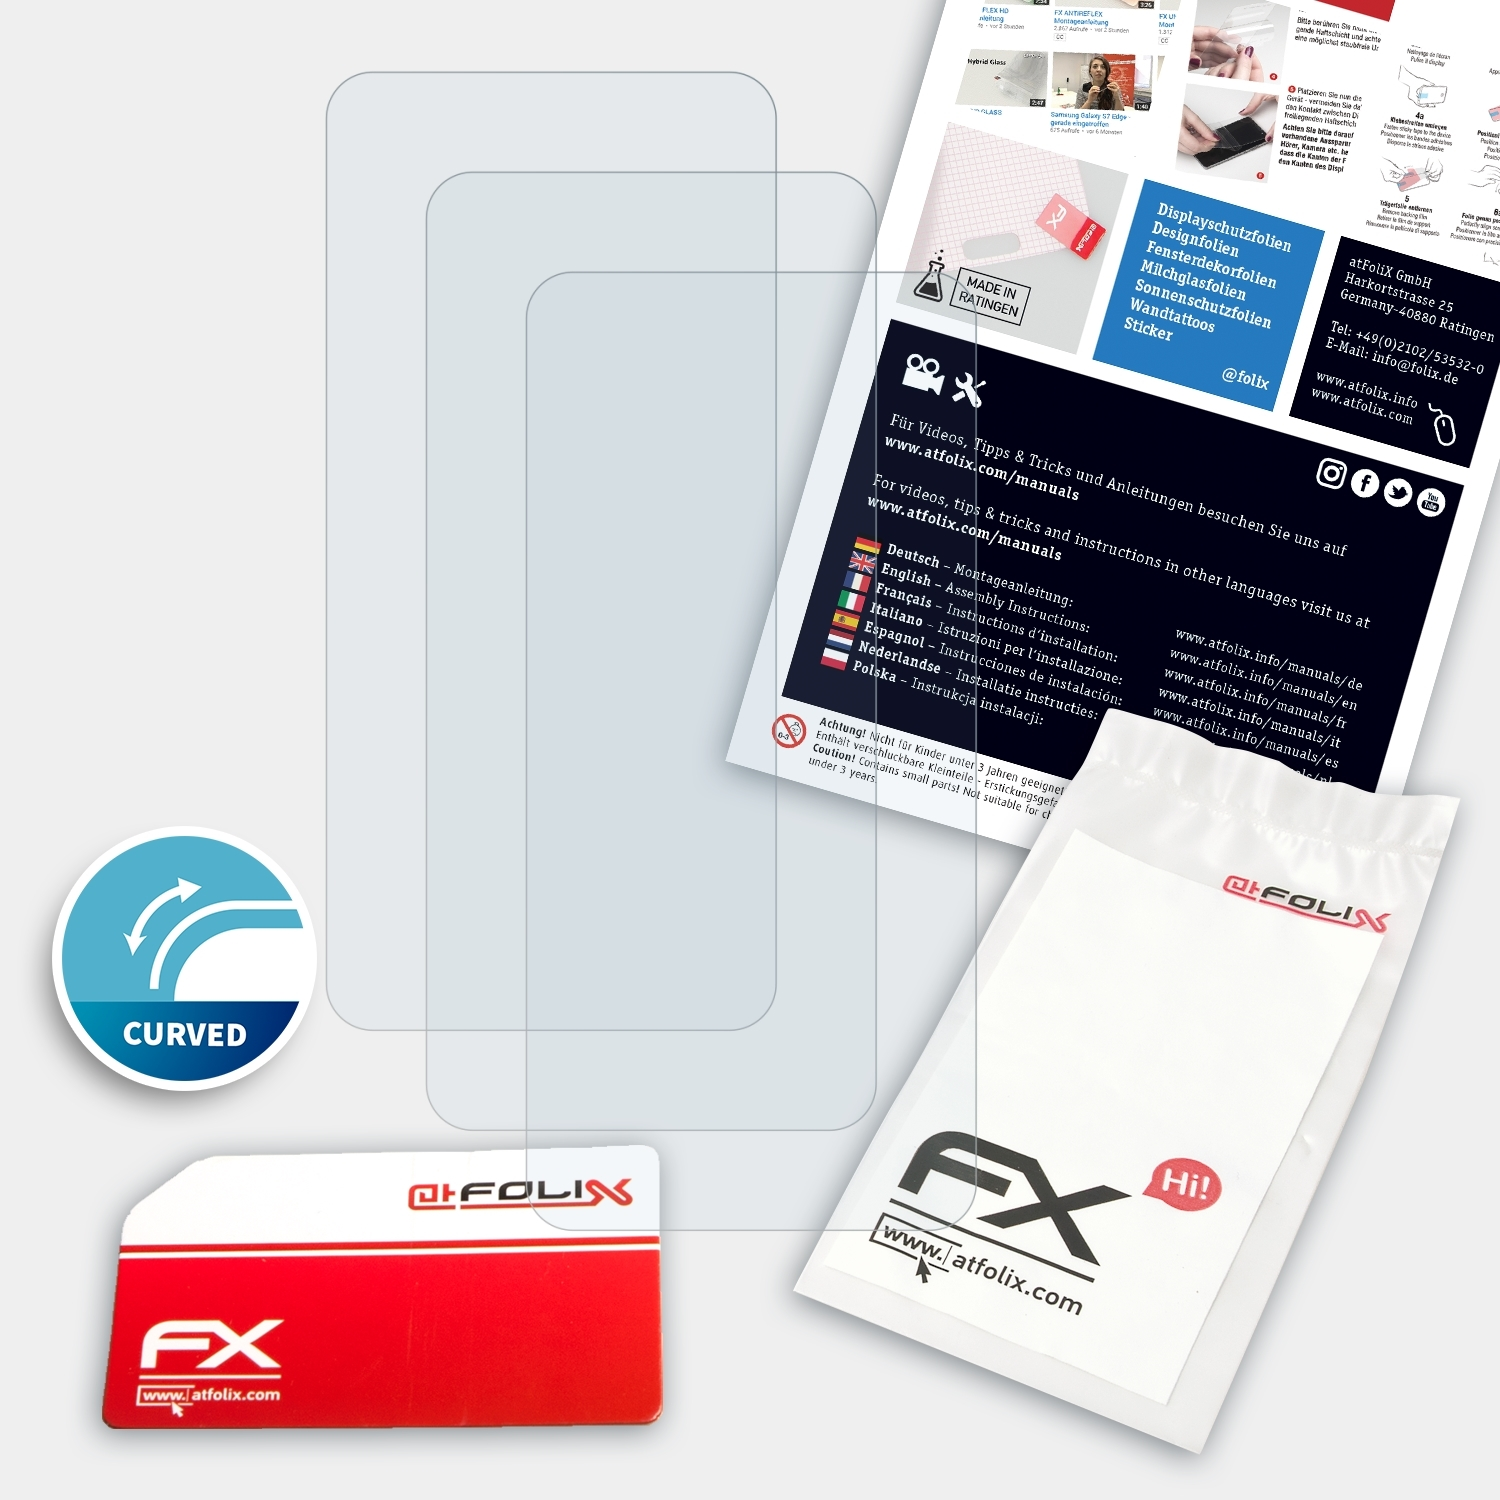 ATFOLIX 3x Displayschutz(für Oppo FX-ActiFleX Reno)